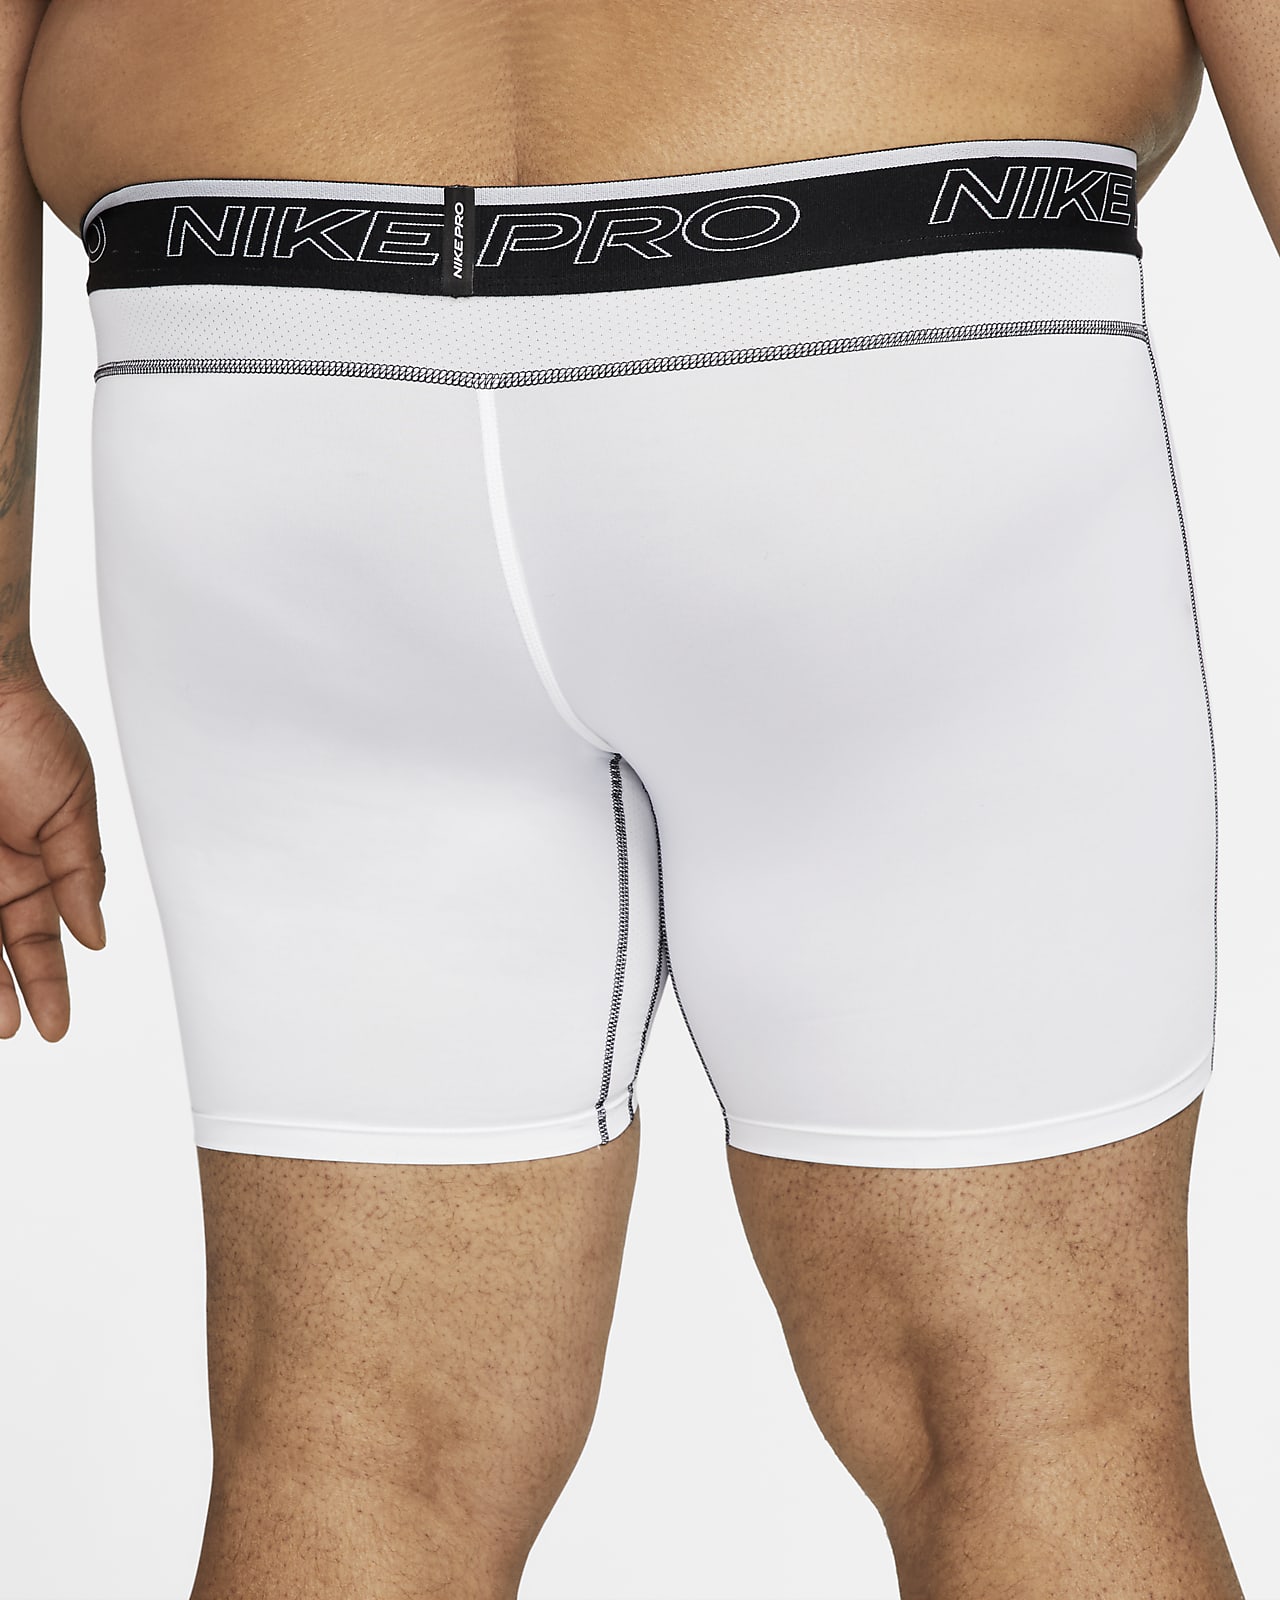 Knop Likeur Tether Nike Pro Dri-FIT Men's Shorts. Nike.com